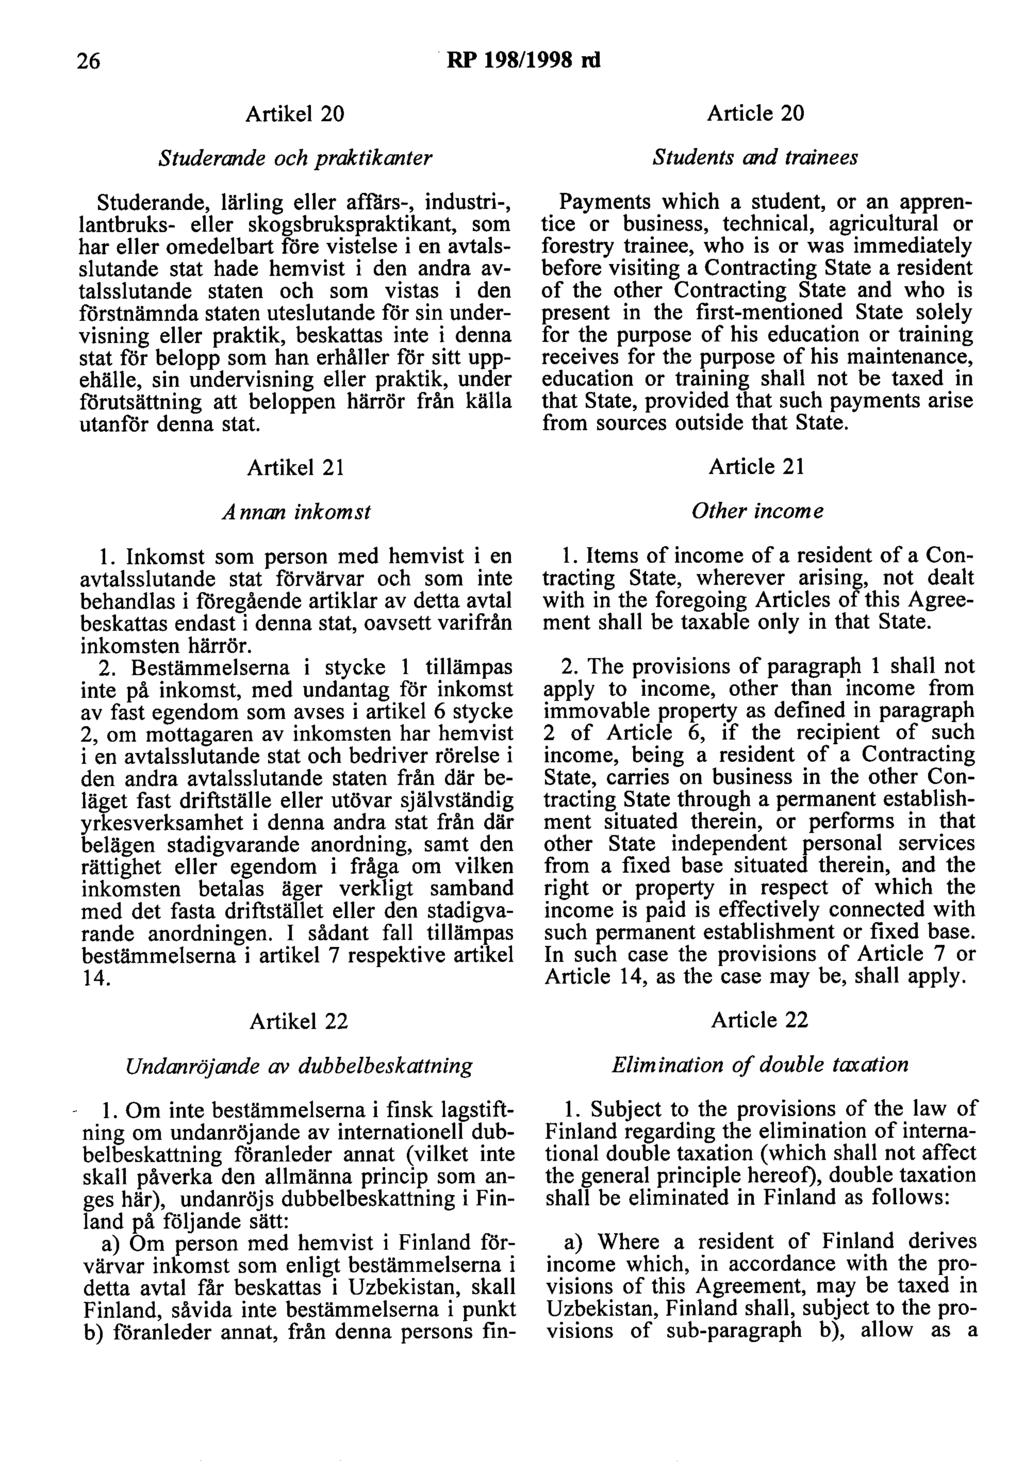 26 RP 198/1998 ni Artikel 20 Article 20 studerande och praktikanter studerande, lärling eller affärs-, industri-, lantbruks- eller skogsbrukspraktikant, som har eller omedelbart före vistelse i en